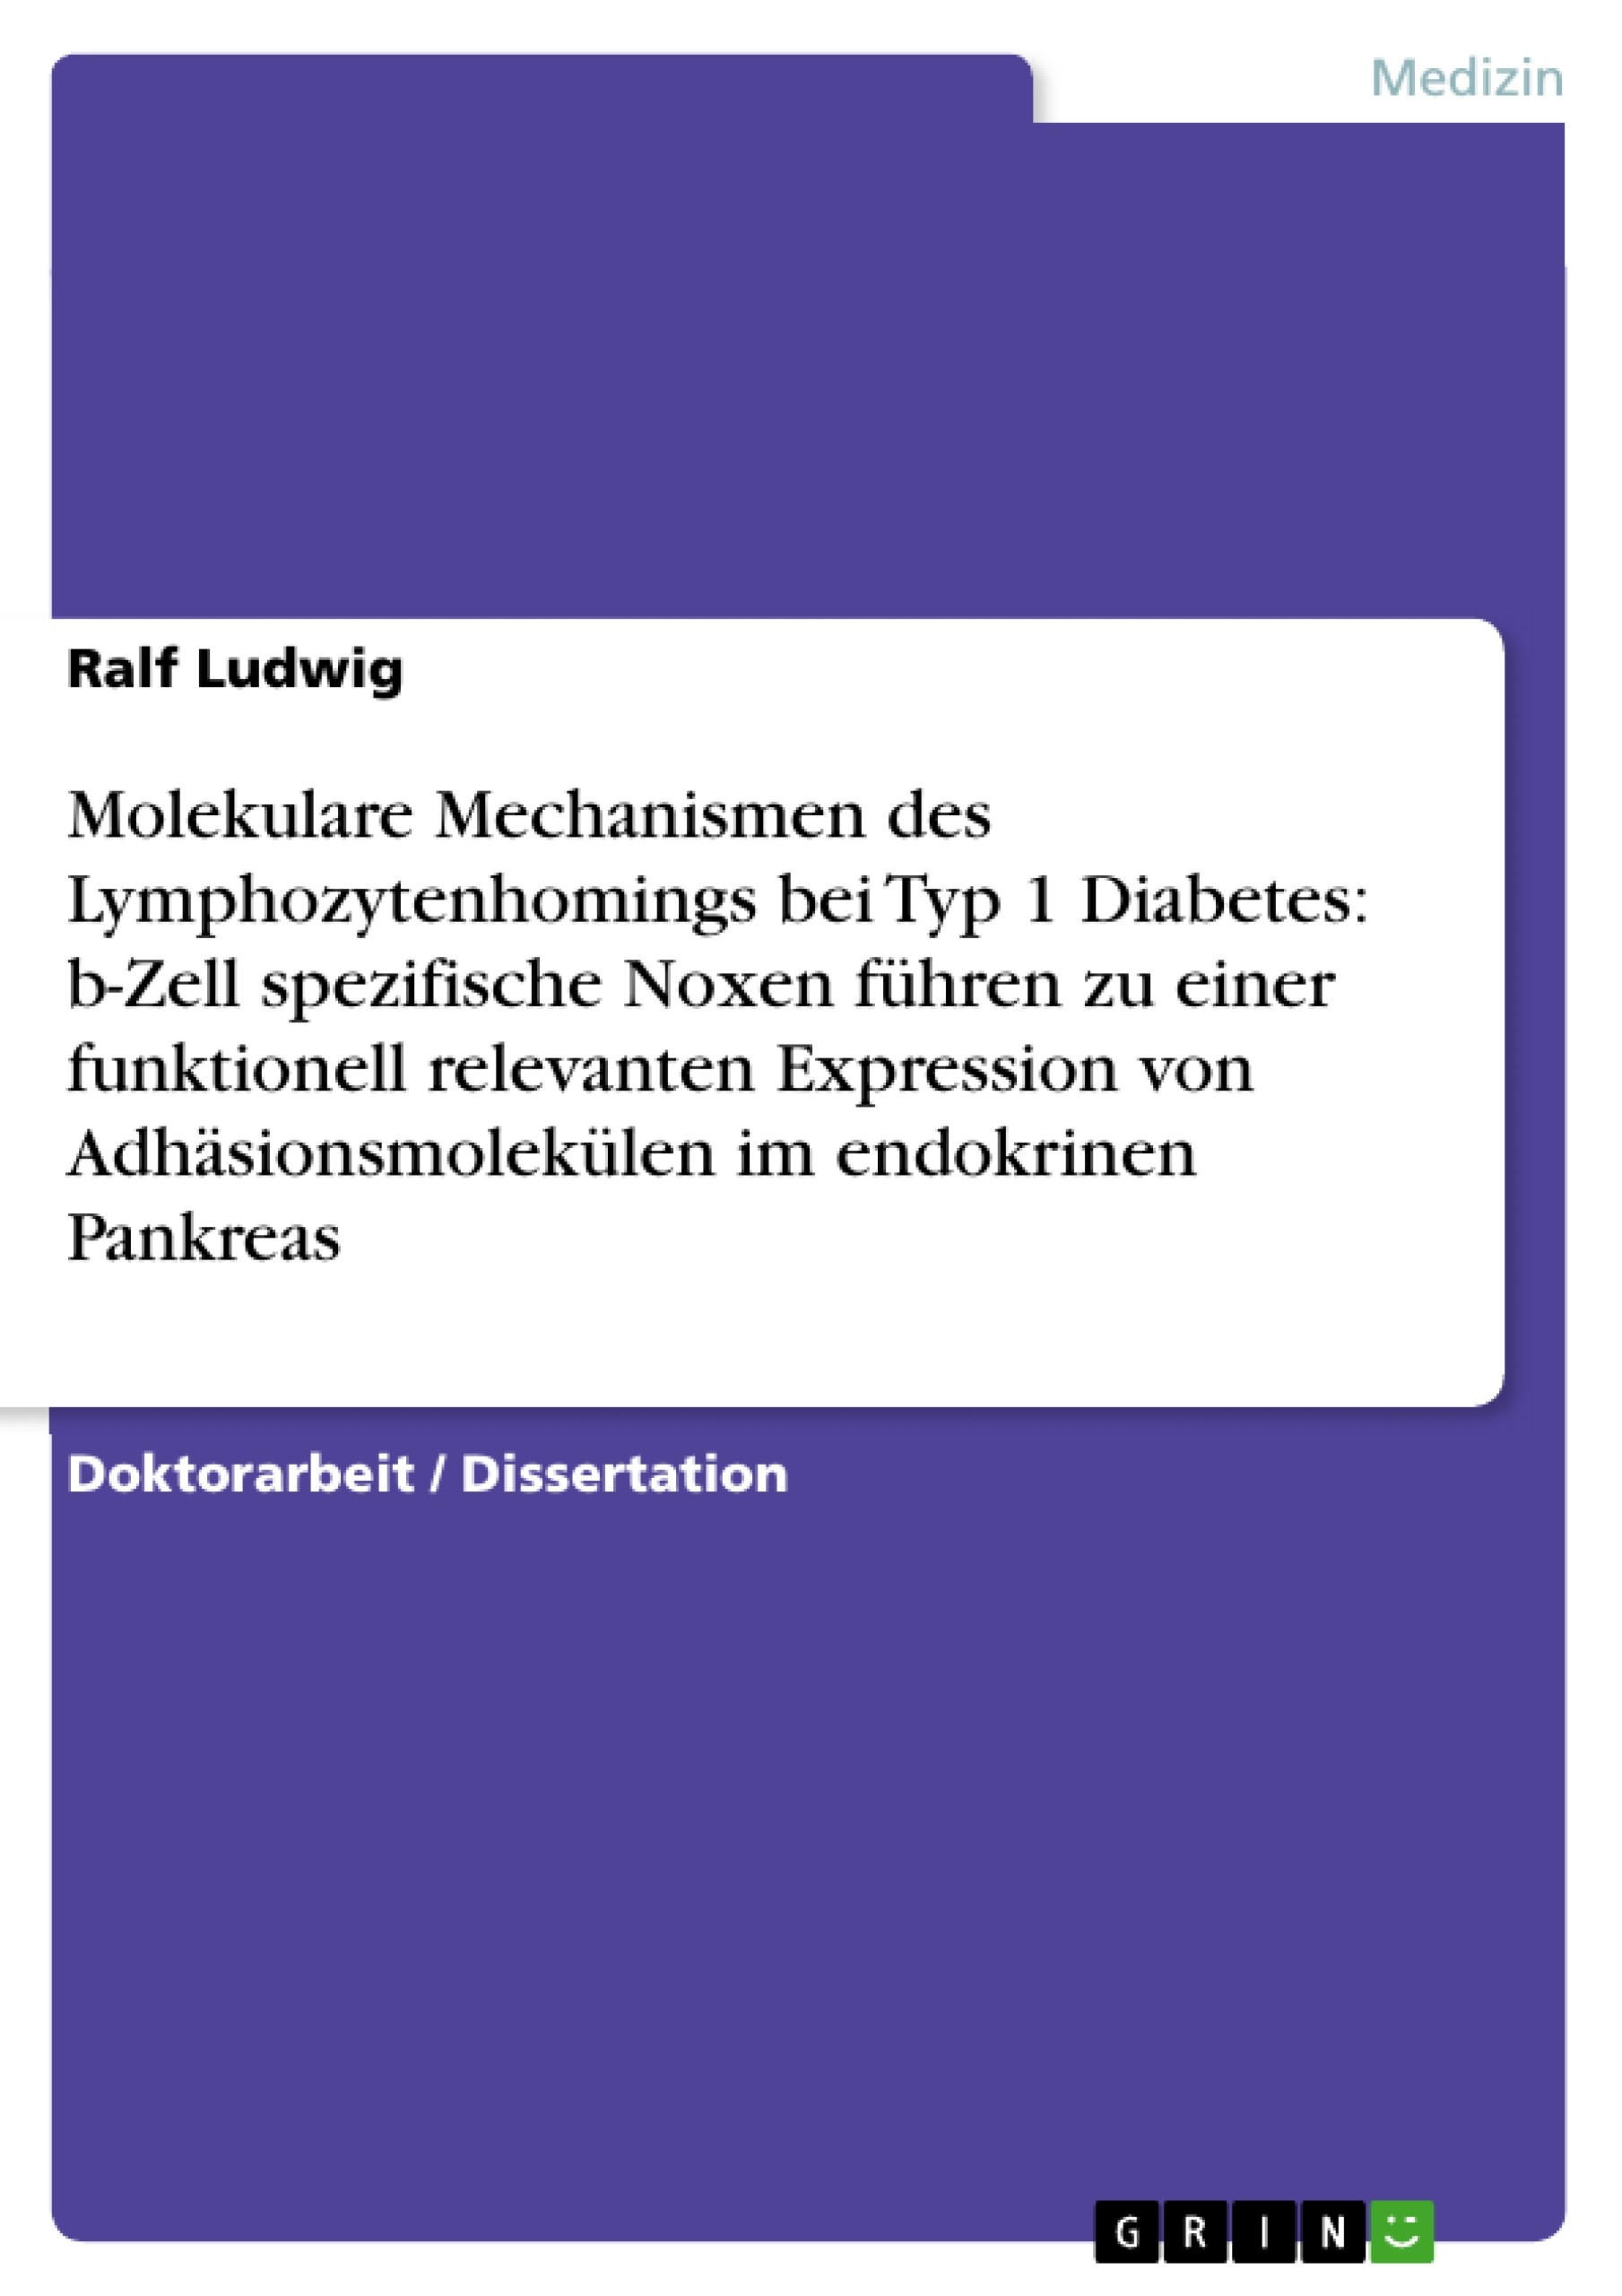 Molekulare Mechanismen des Lymphozytenhomings bei Typ 1 Diabetes: b-Zell spezifische Noxen führen zu einer funktionell relevanten Expression von  Adhäsionsmolekülen im endokrinen Pankreas